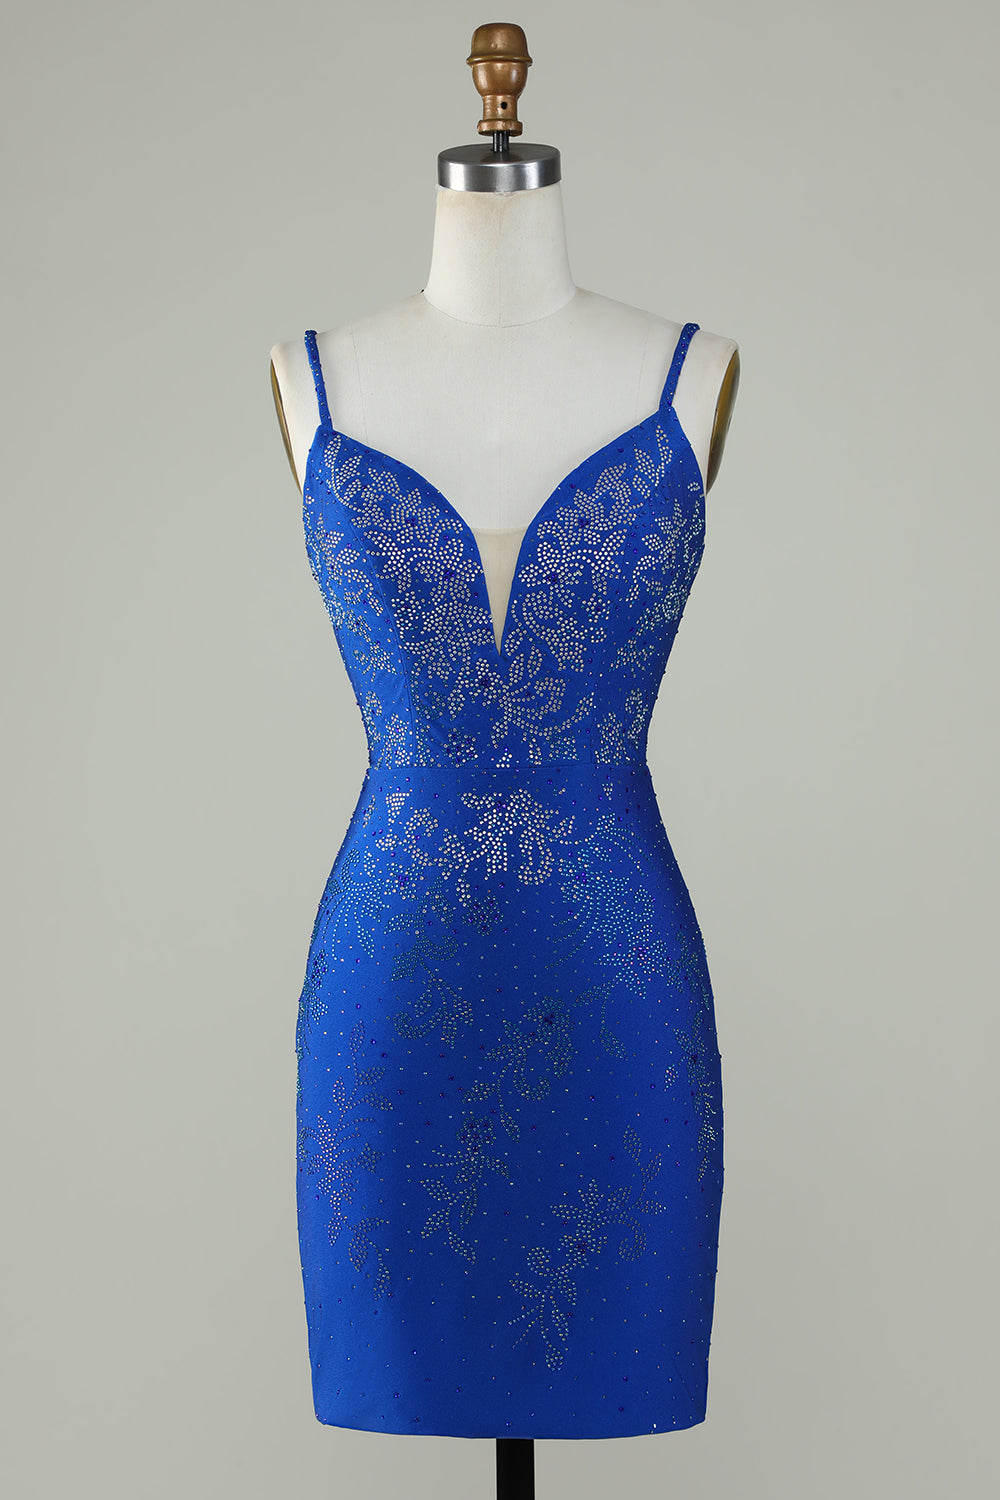 Royal Blue Frisado Esparguete Correias Bodycon Homecoming Dress